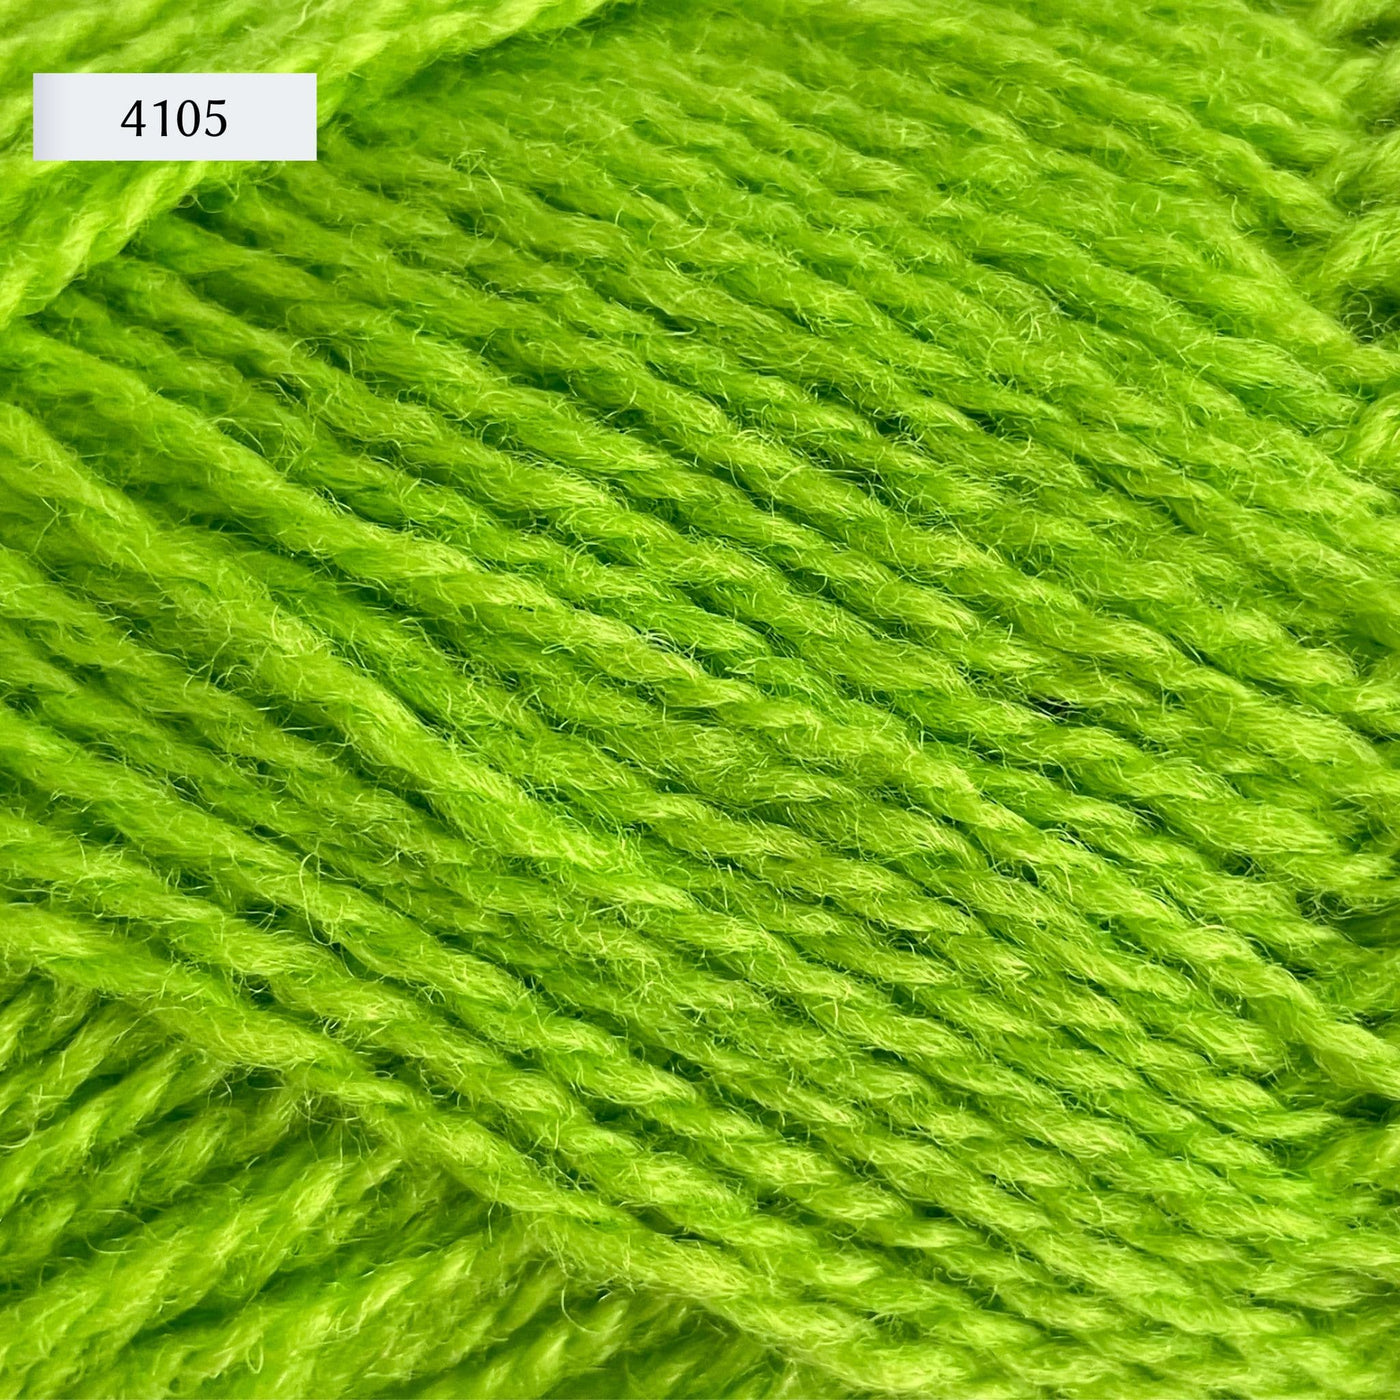 Rauma Finullgarn, a fingering/sport weight yarn, in color 4105, a bright acid green